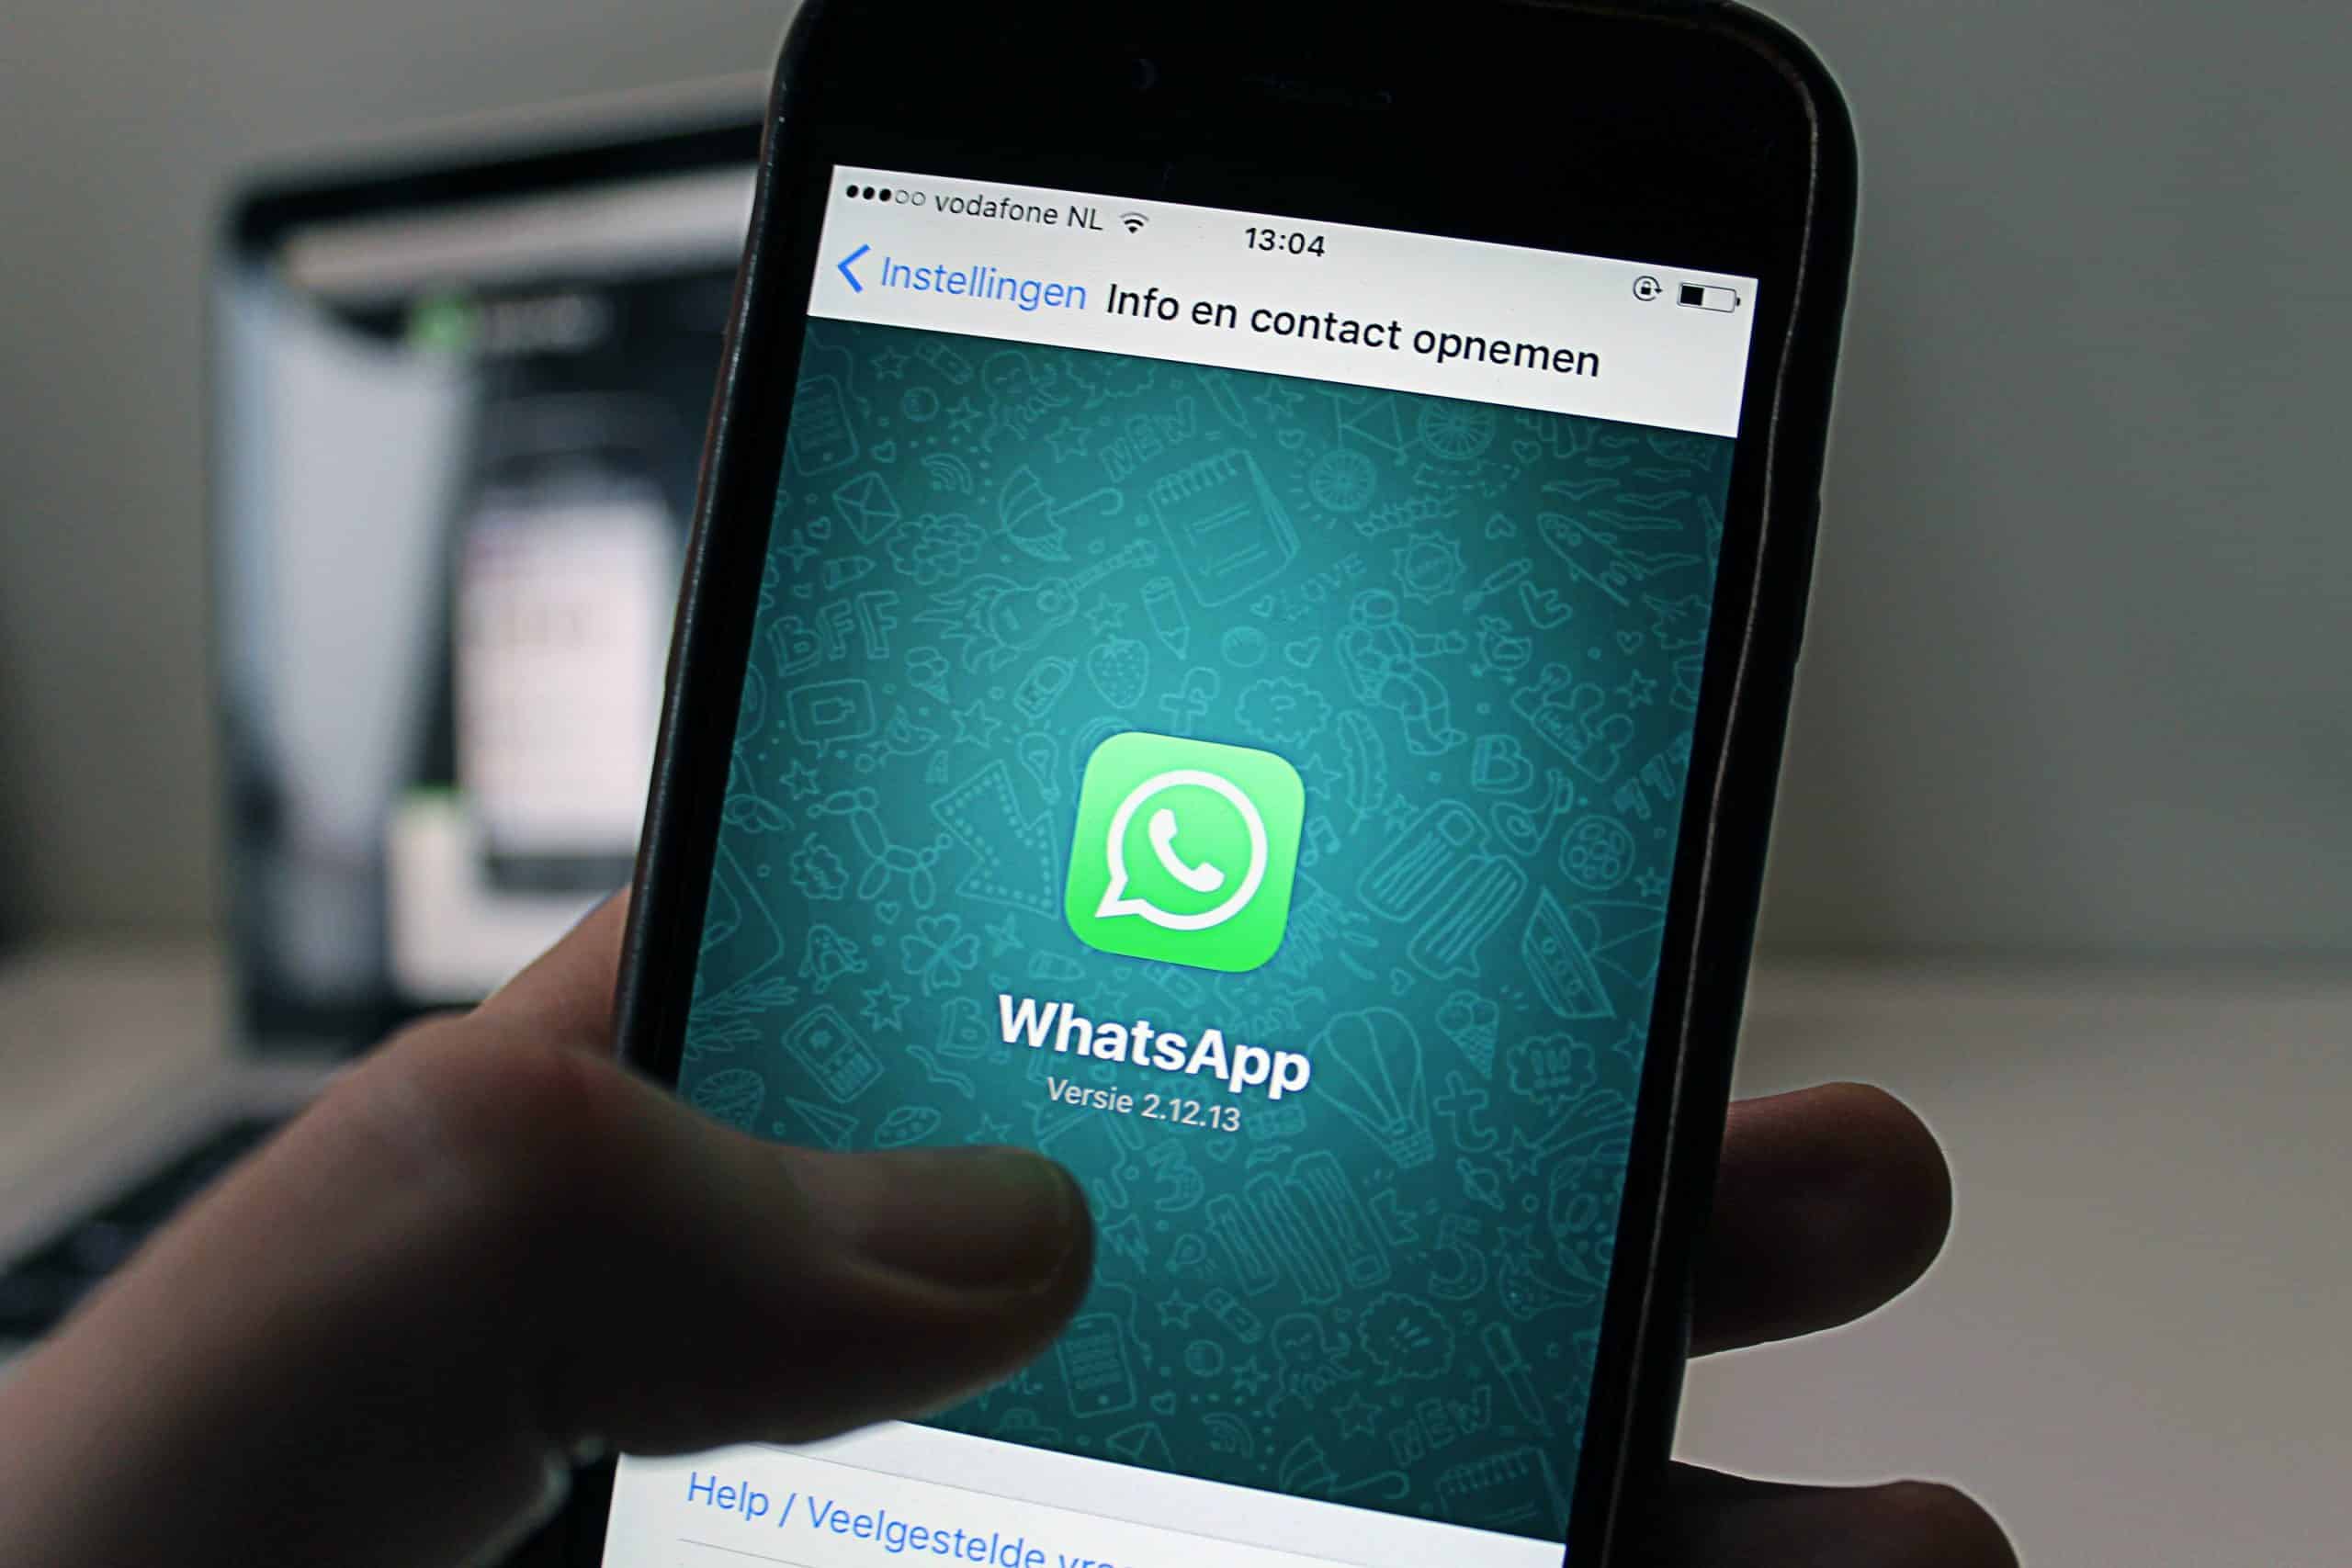 conheça 4 funções úteis no whatsapp para você aproveitar